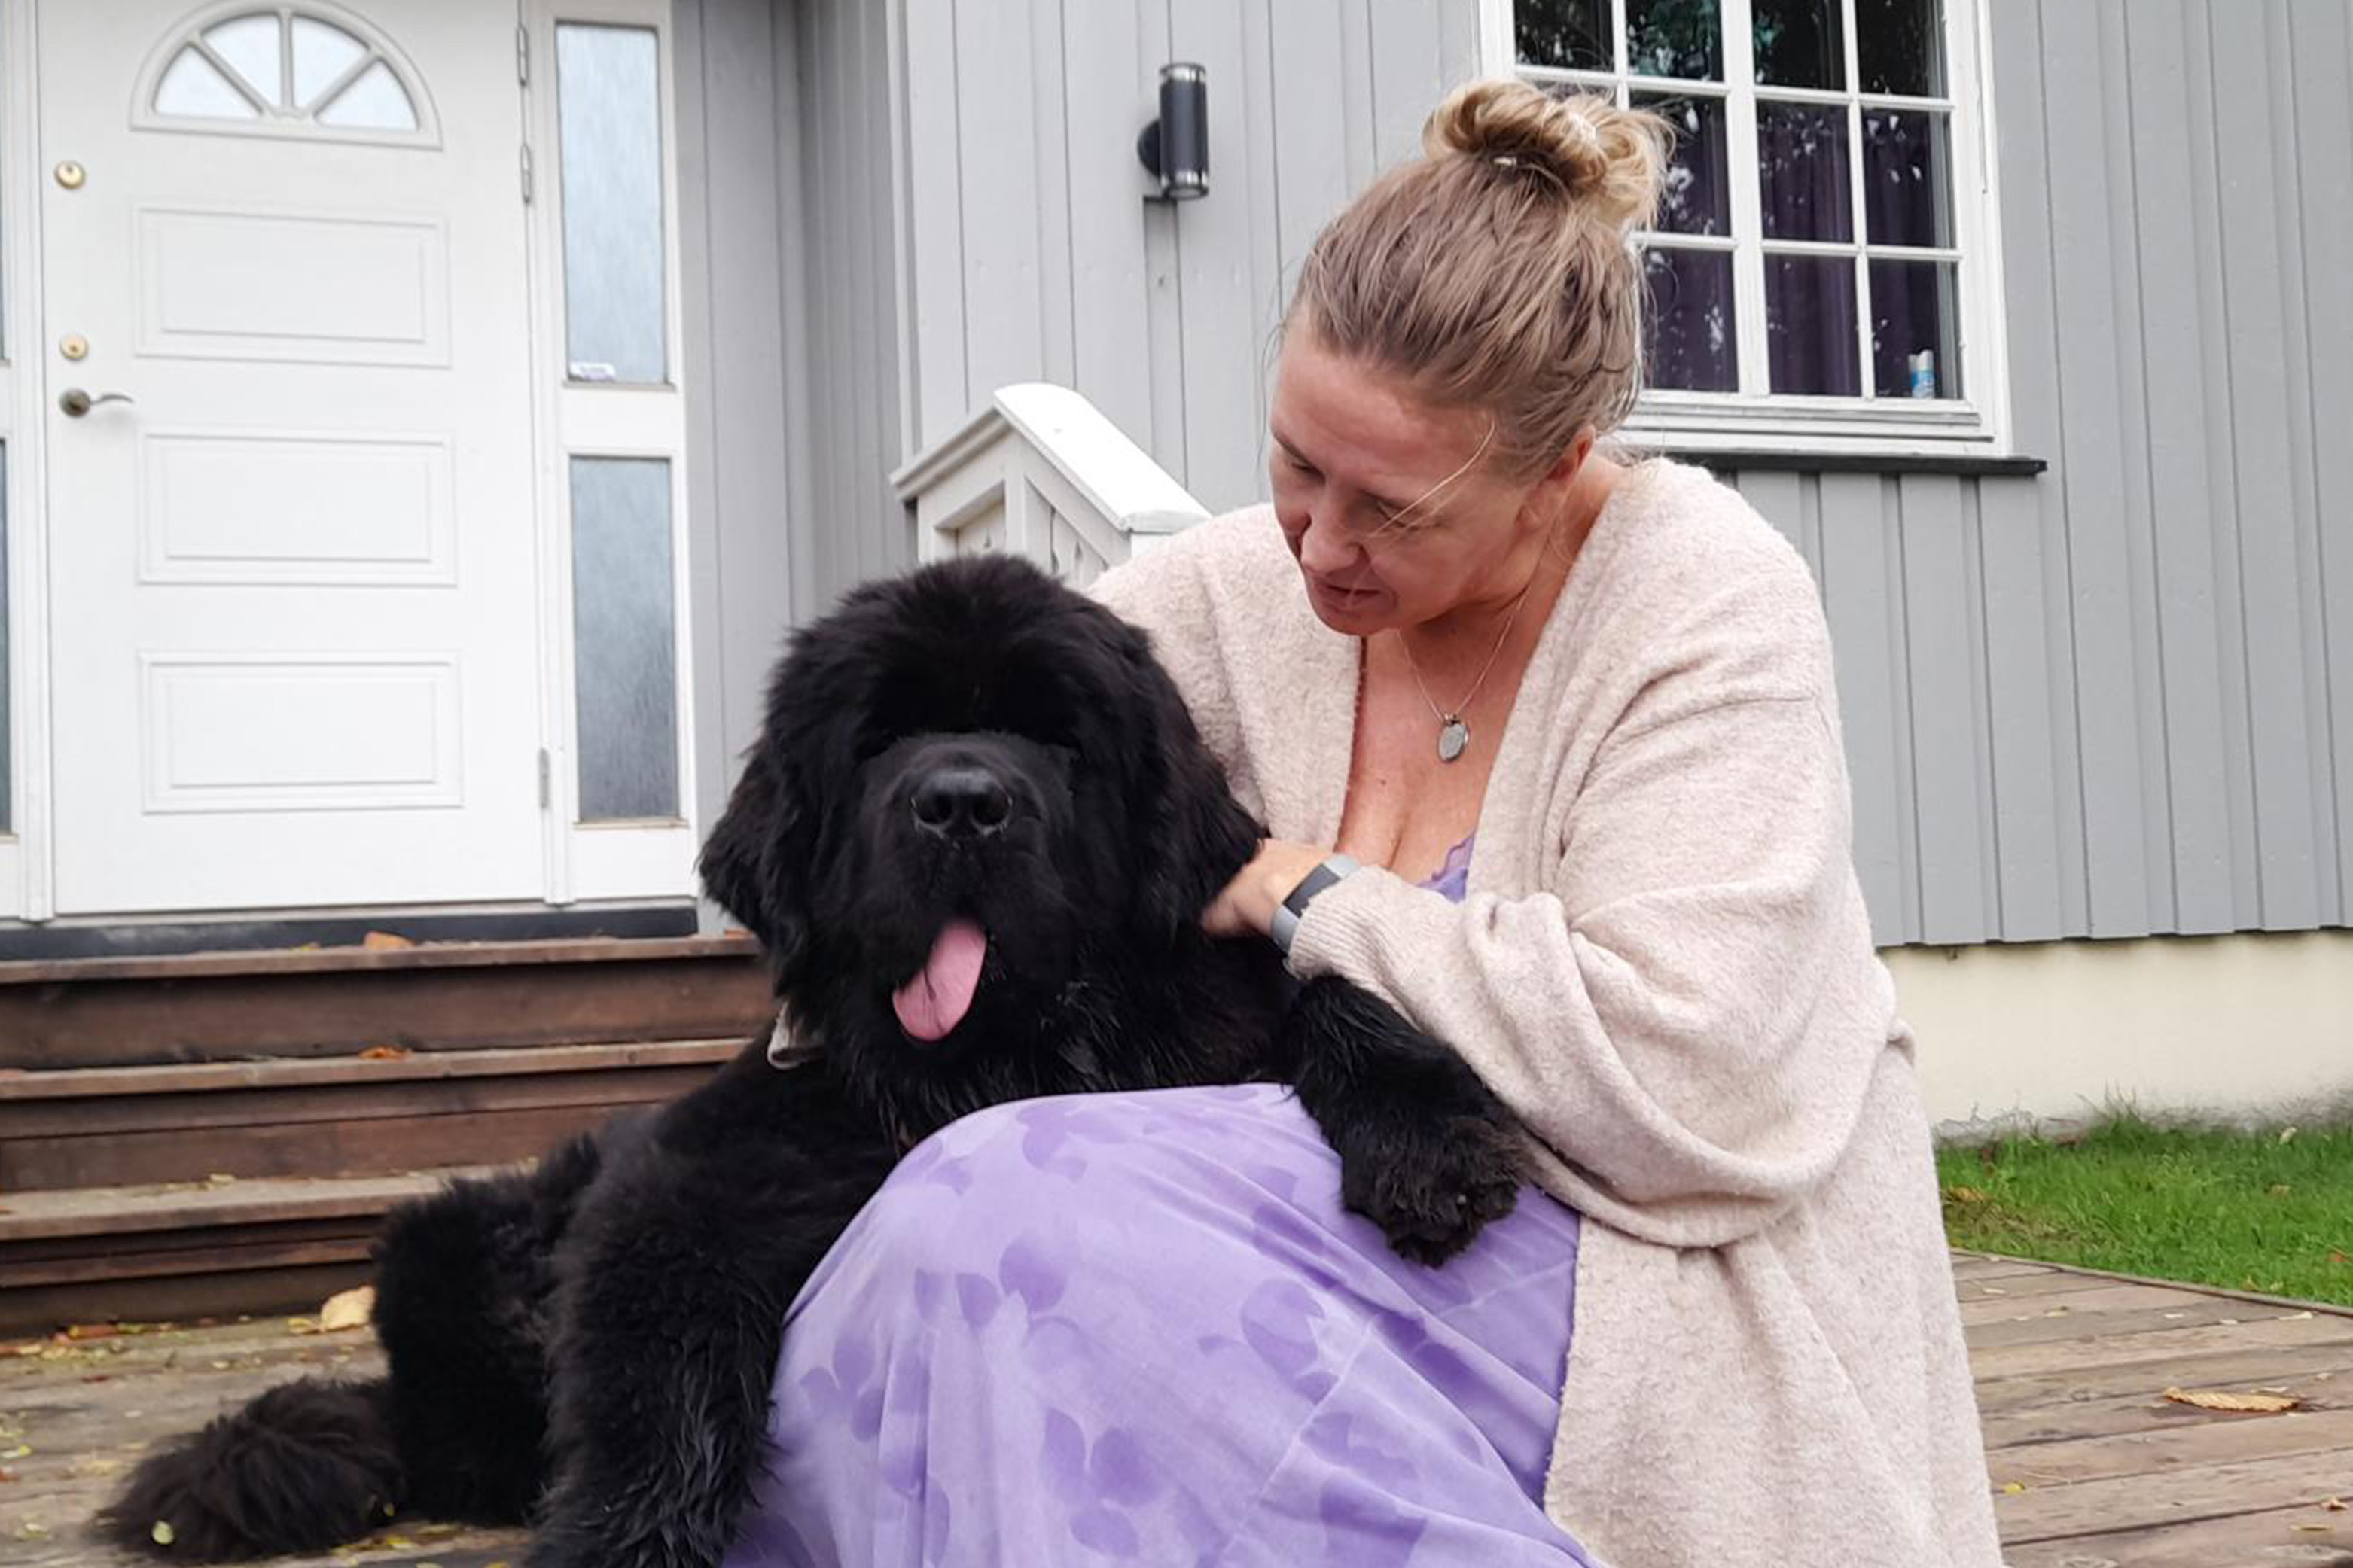 En dame med lyst hår koser med hunden sin foran huset sitt